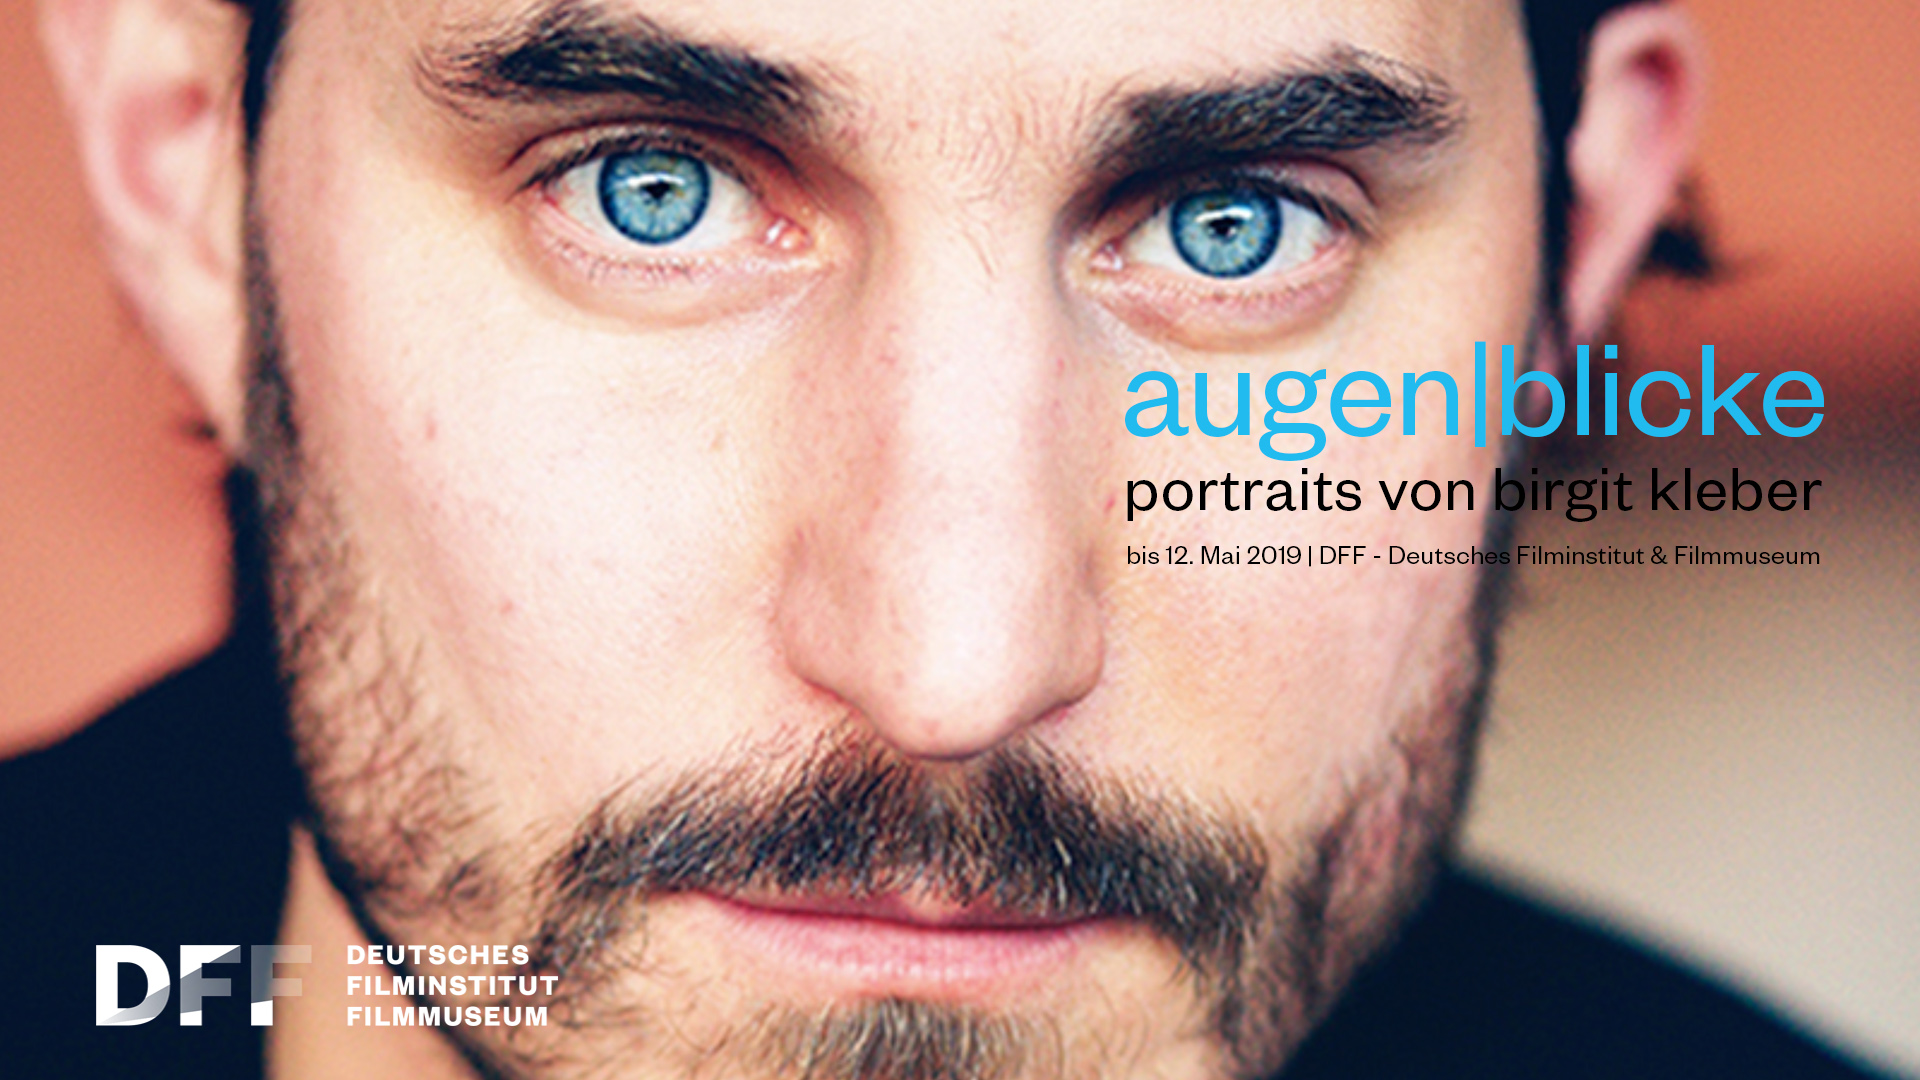 Ein weiteres Porträtplakat. Ein Mann mit stechend blauen Augen und Bart.